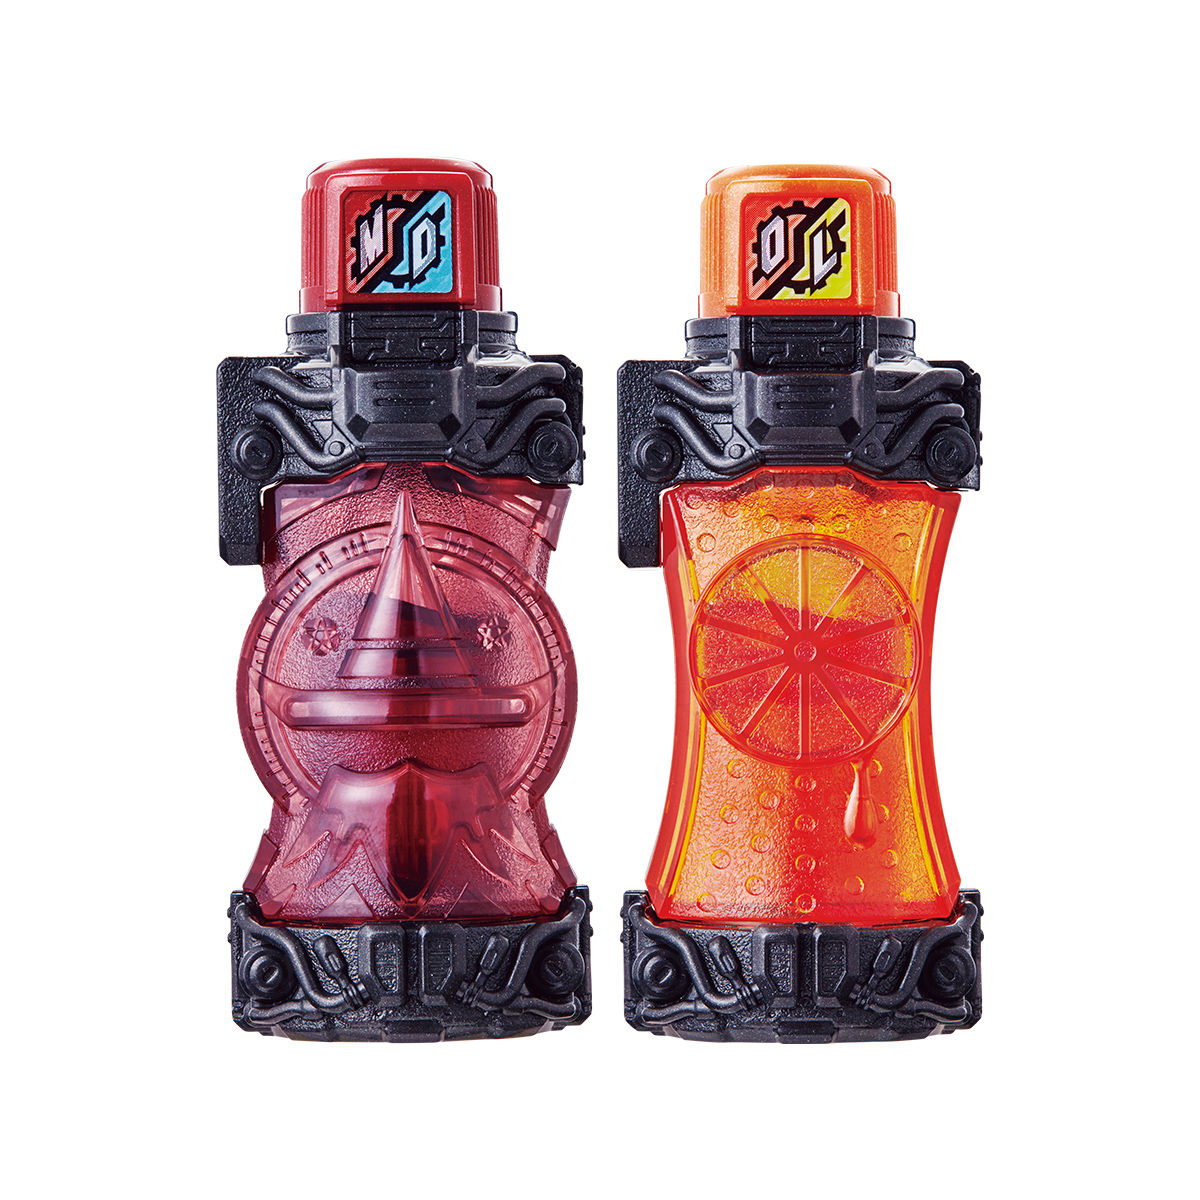 DX魔法使いオレンジフルボトルセット | 仮面ライダーおもちゃウェブ | バンダイ公式サイト